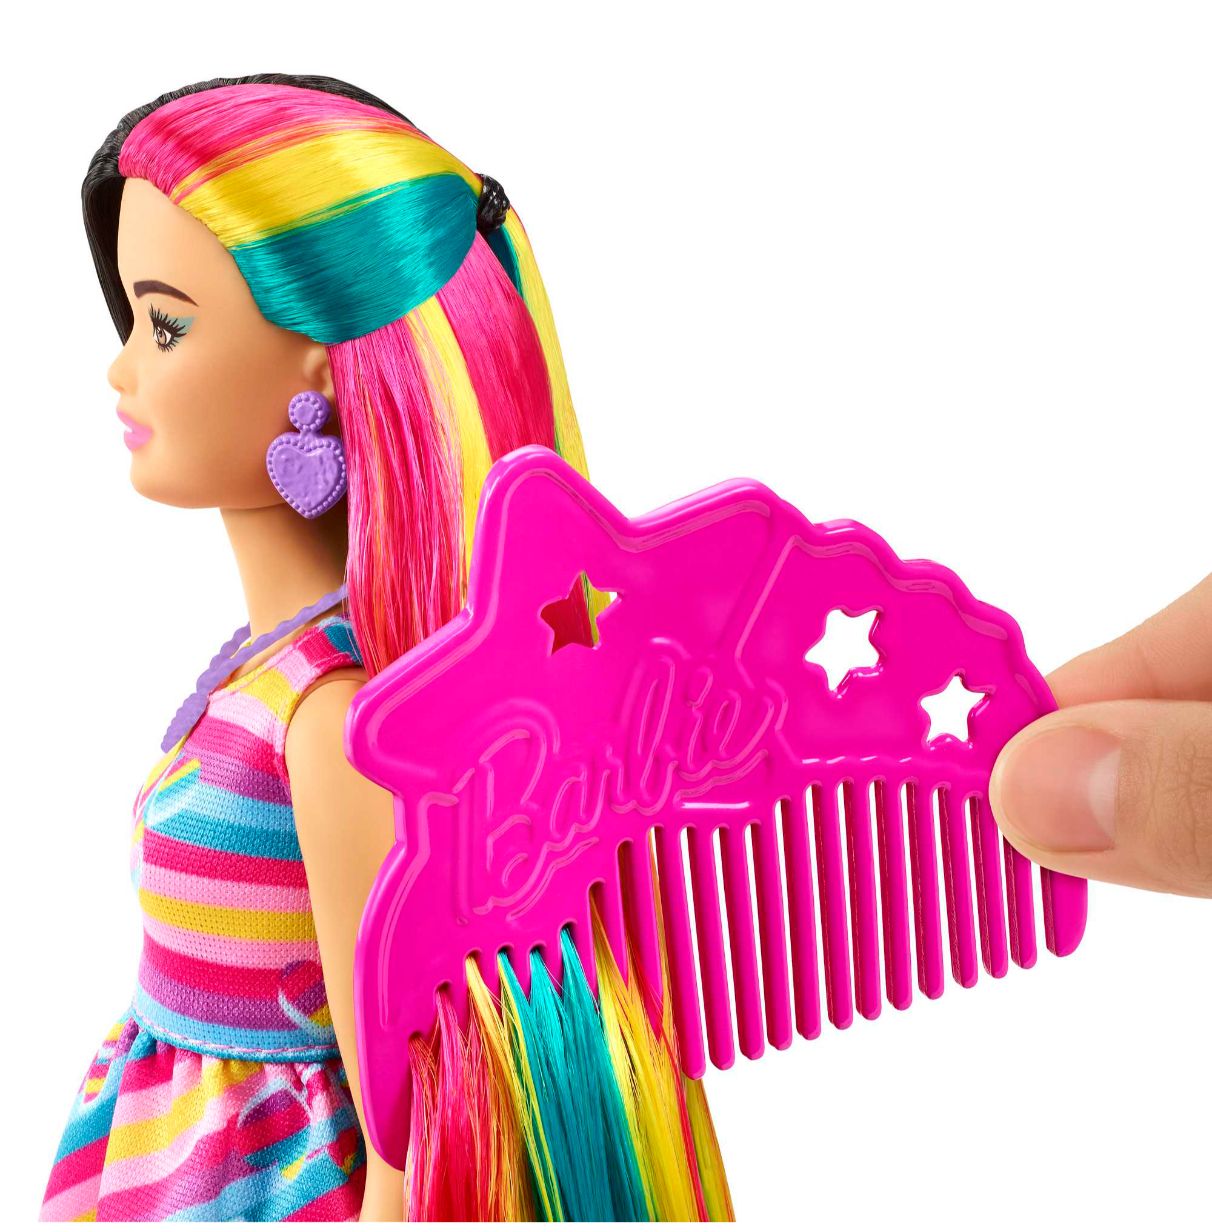 barbie totally hair extralargo corazon